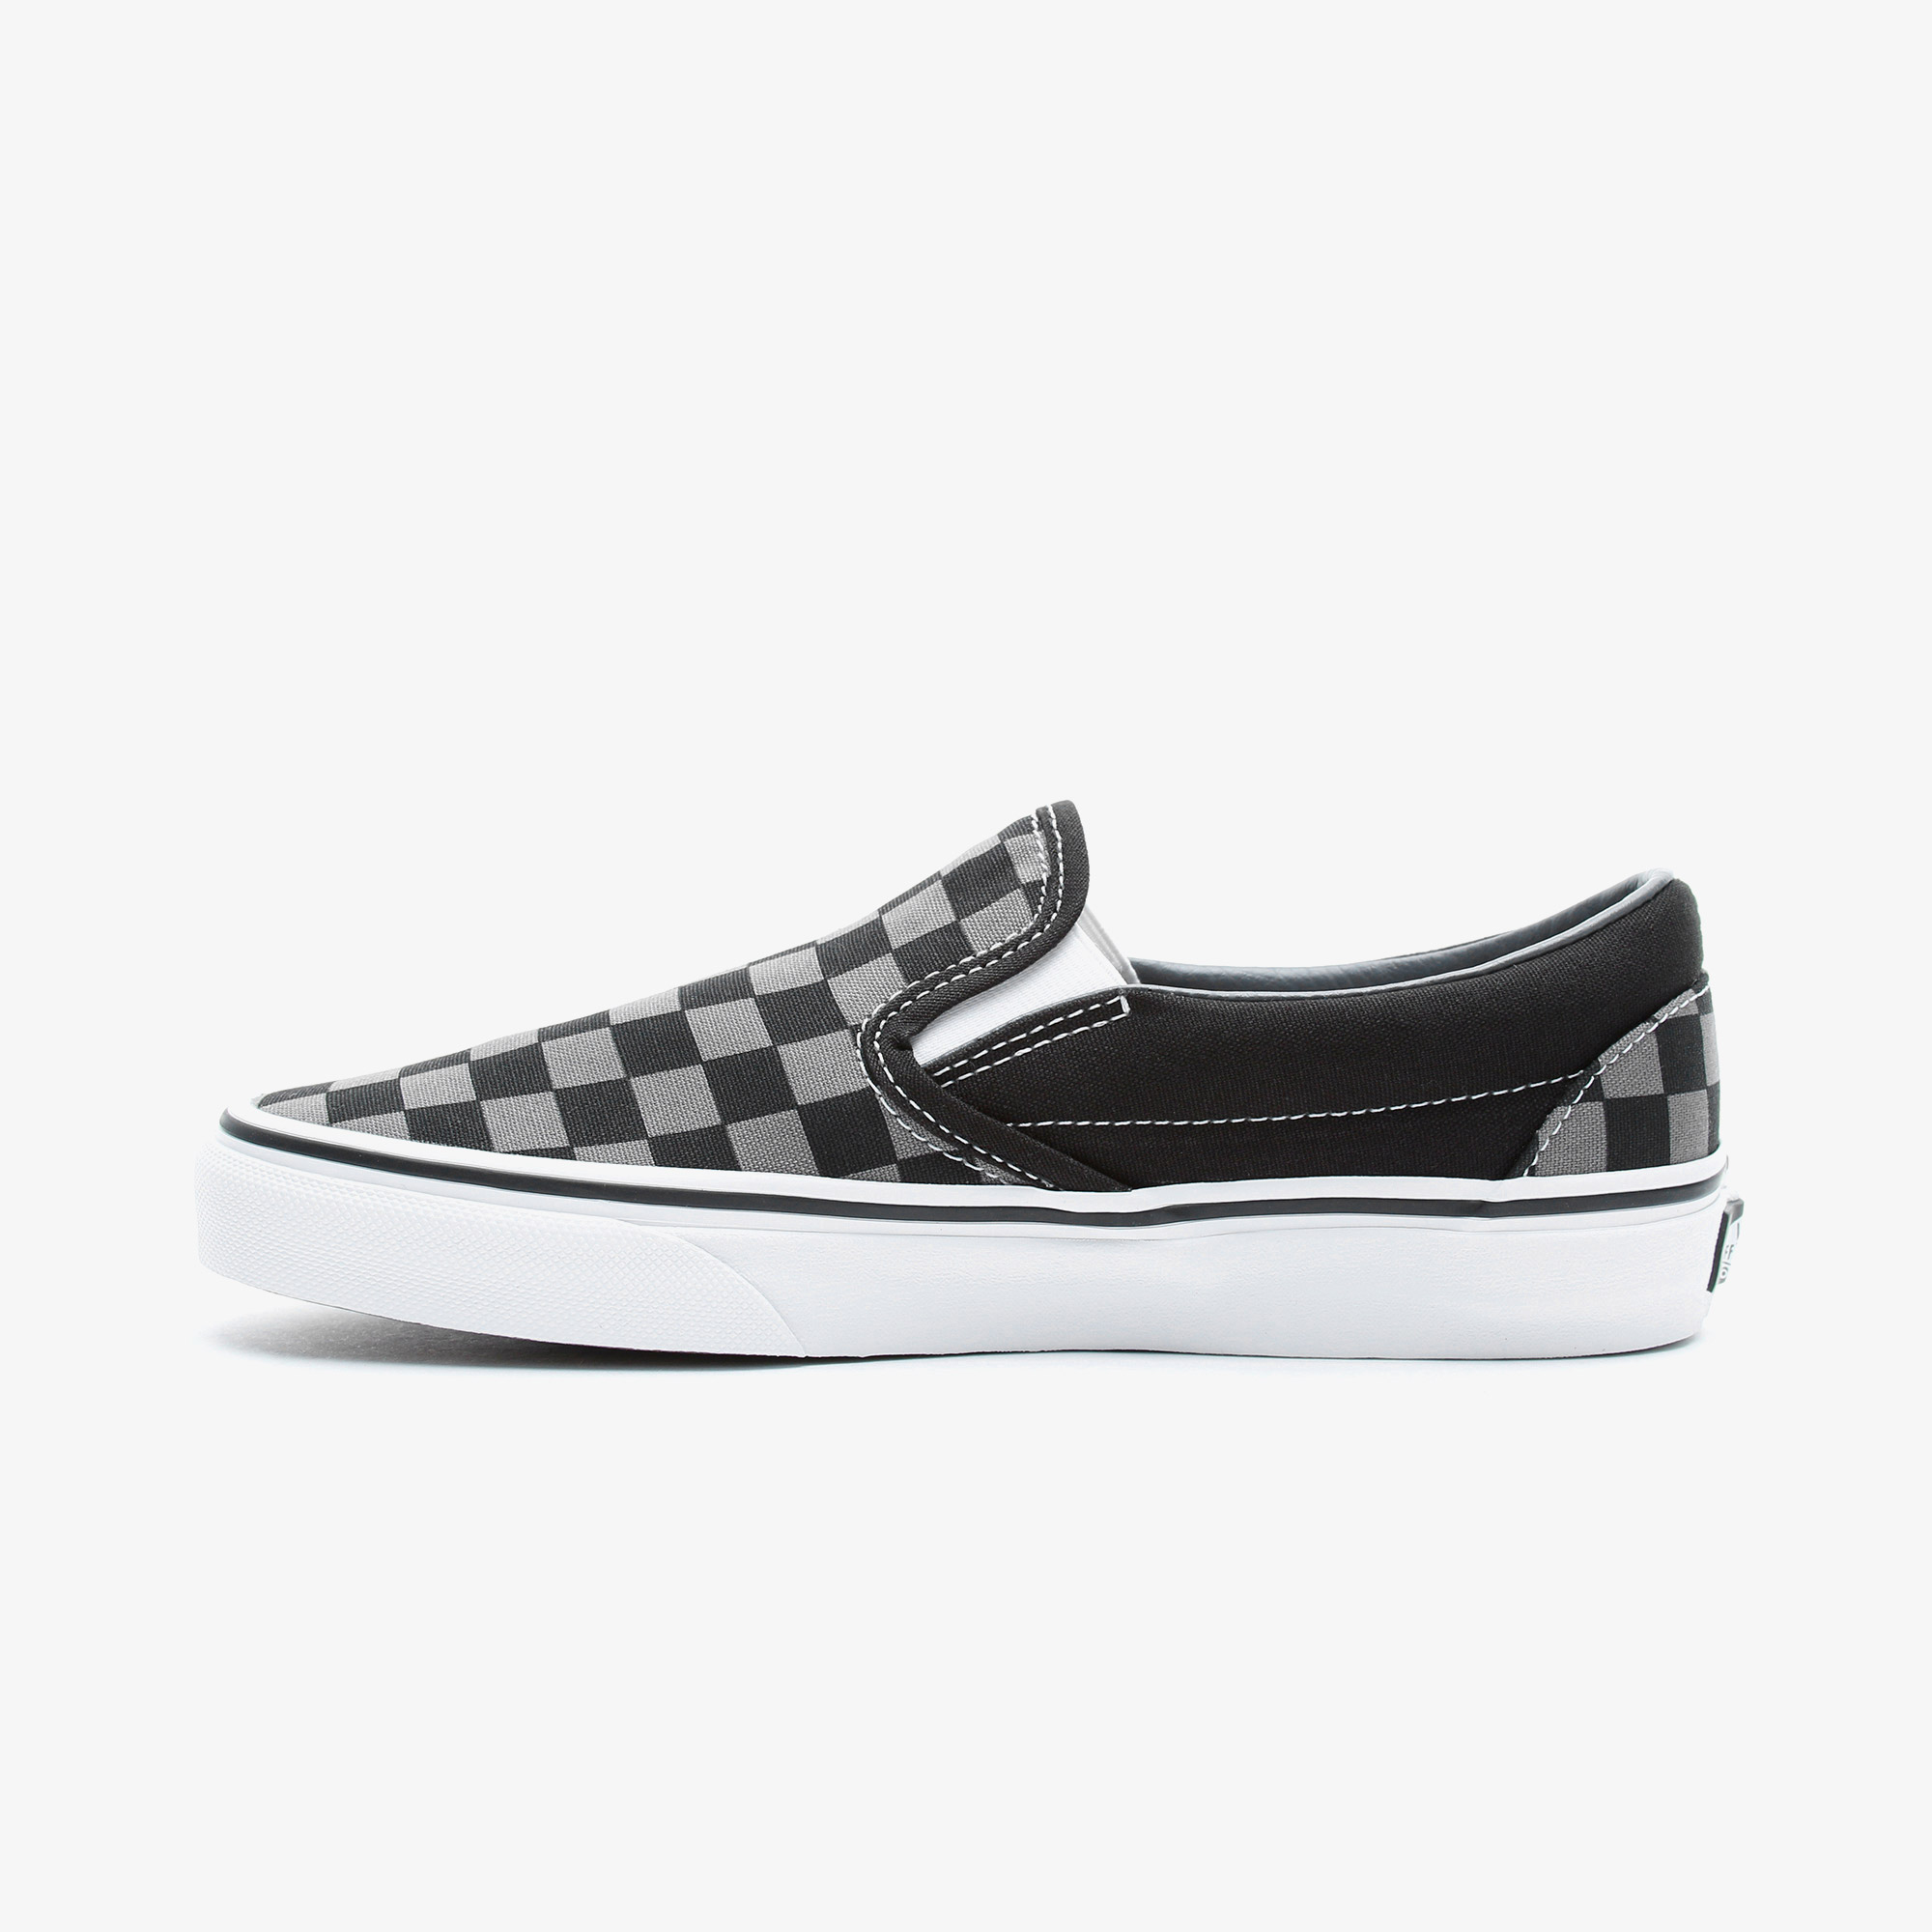 Vans Classic Slip-On Checkerboard Siyah Unisex Sneaker